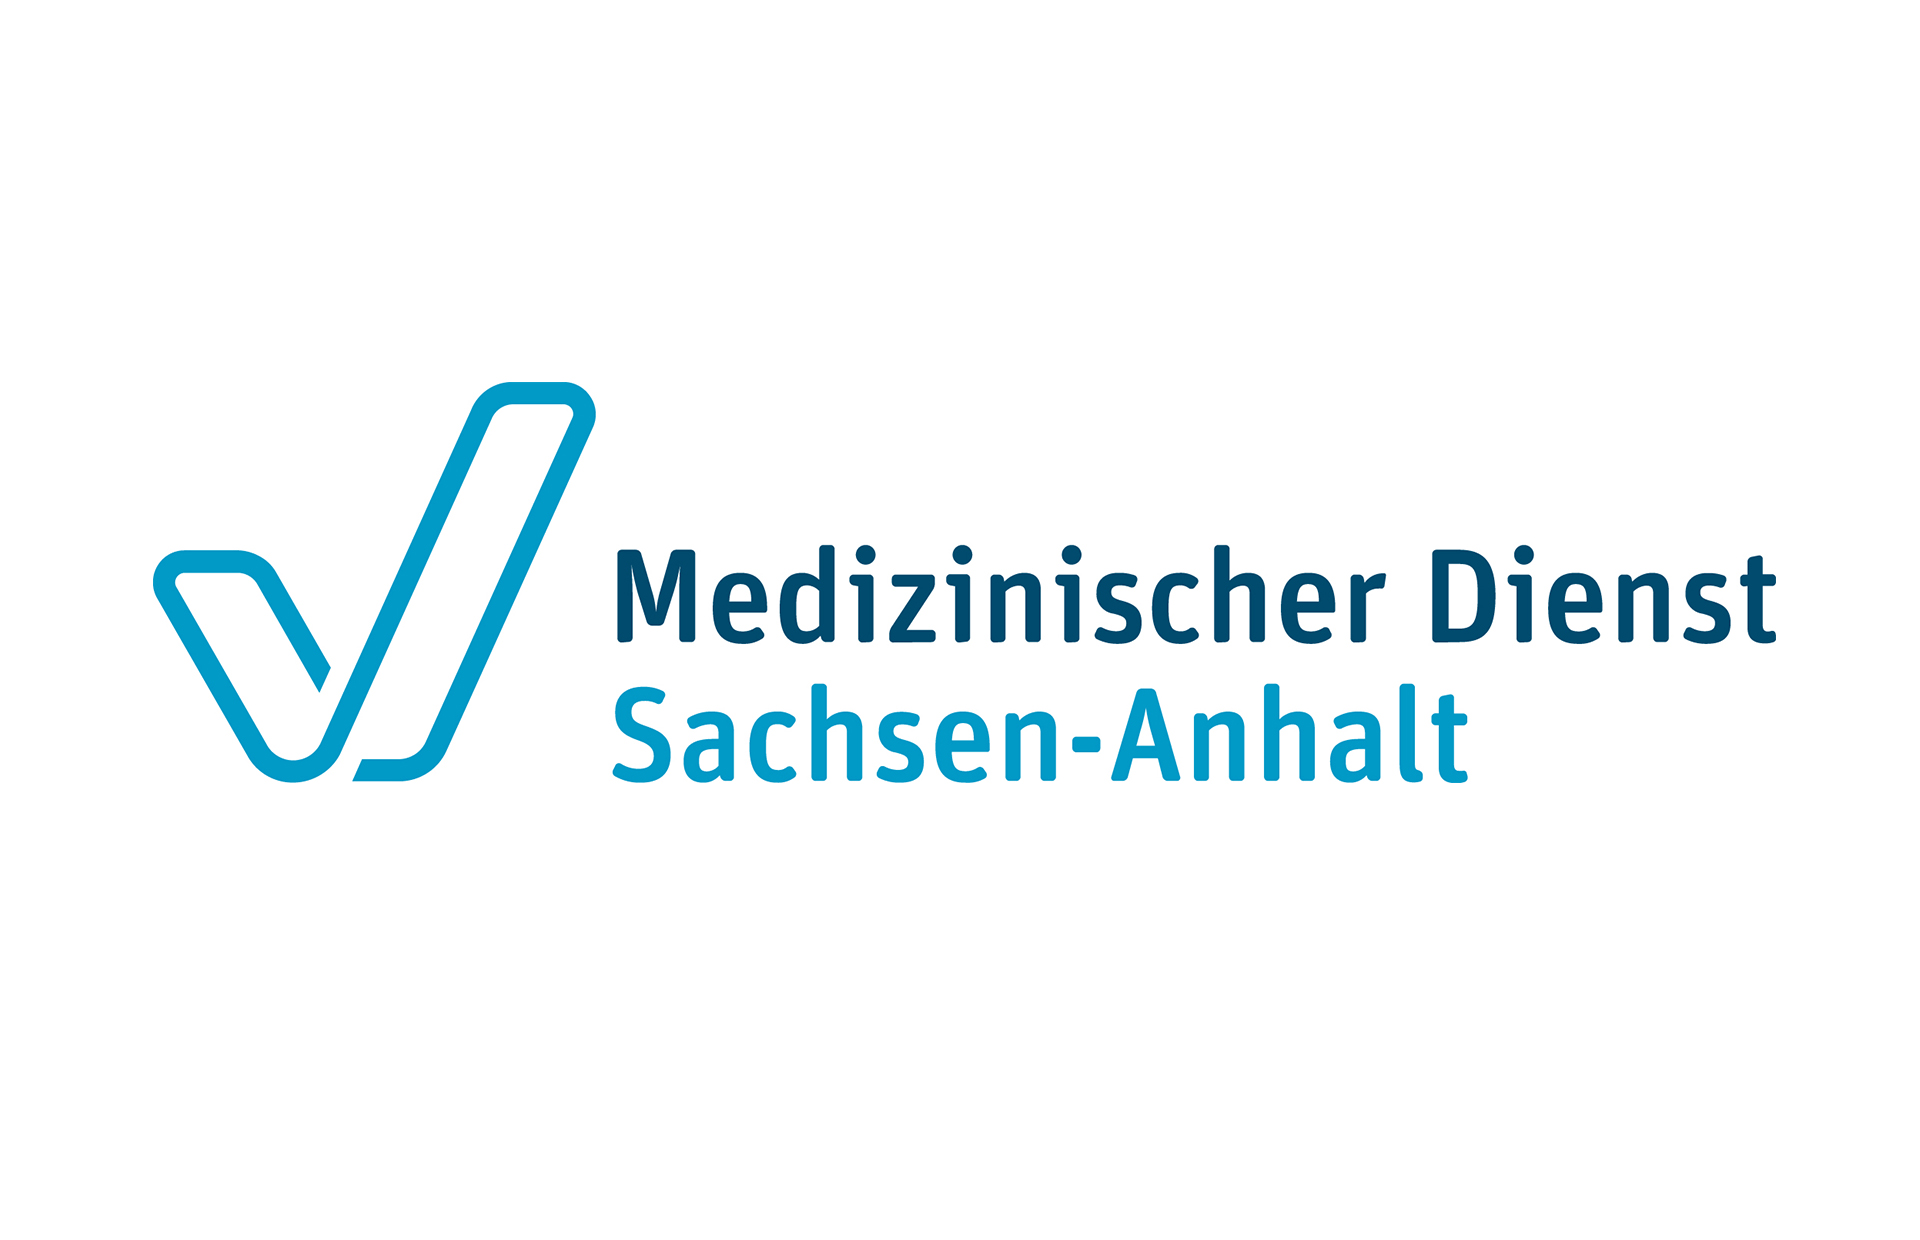 Altmark Forum Stendal - Medizinischer Dienst Sachsen-Anhalt